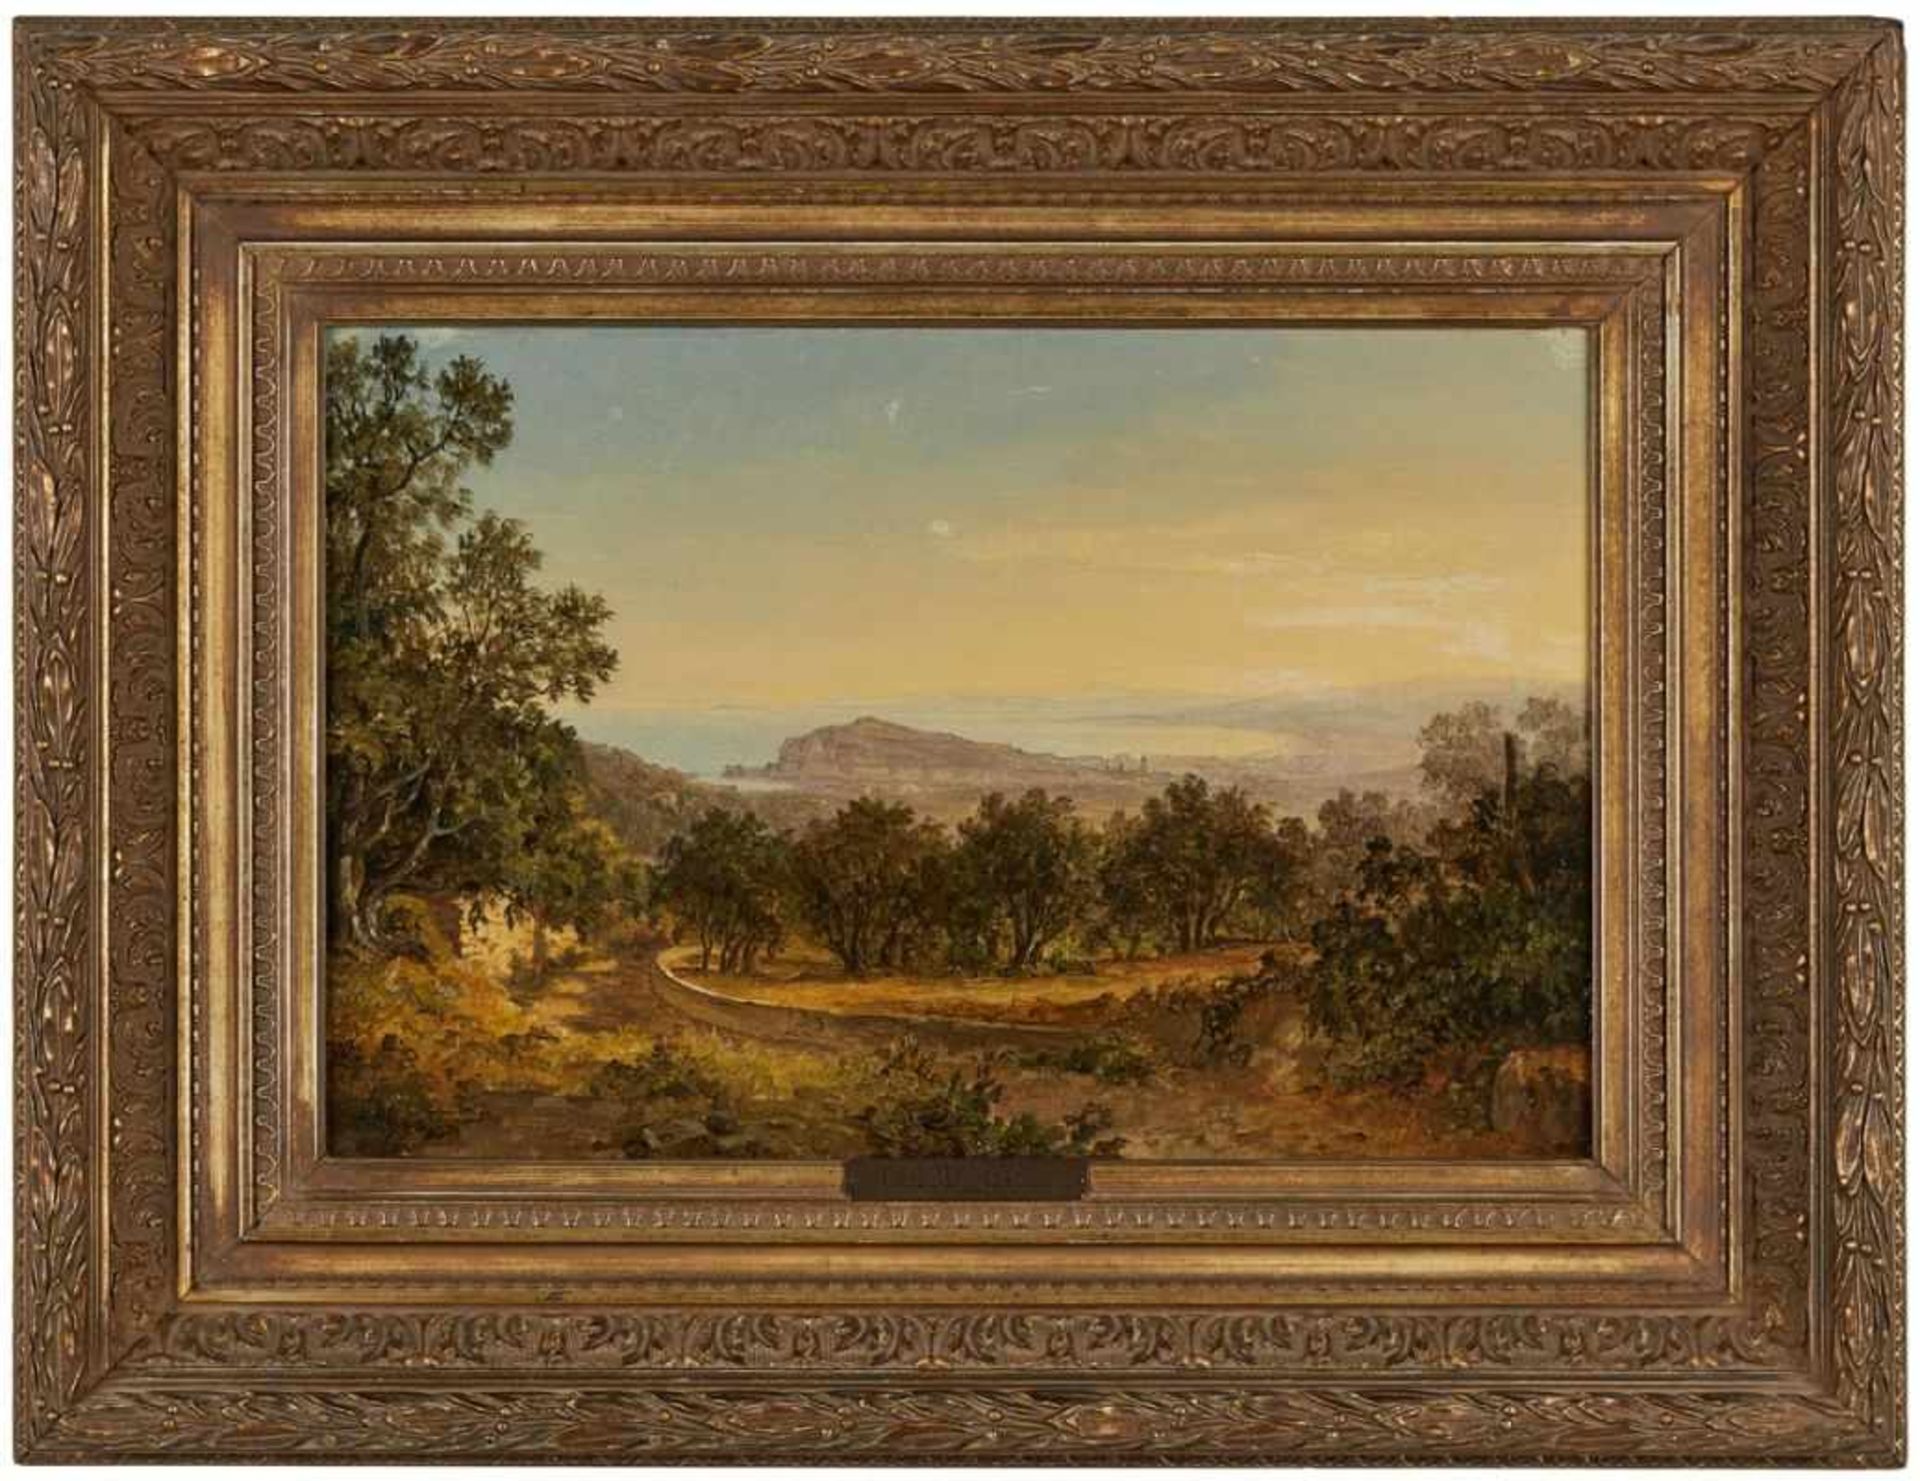 Gemälde Carl Morgenstern1811 Frankfurt - 1893 Frankfurt Landschaftsmaler. Sohn des Joh. Friedr., - Image 2 of 2